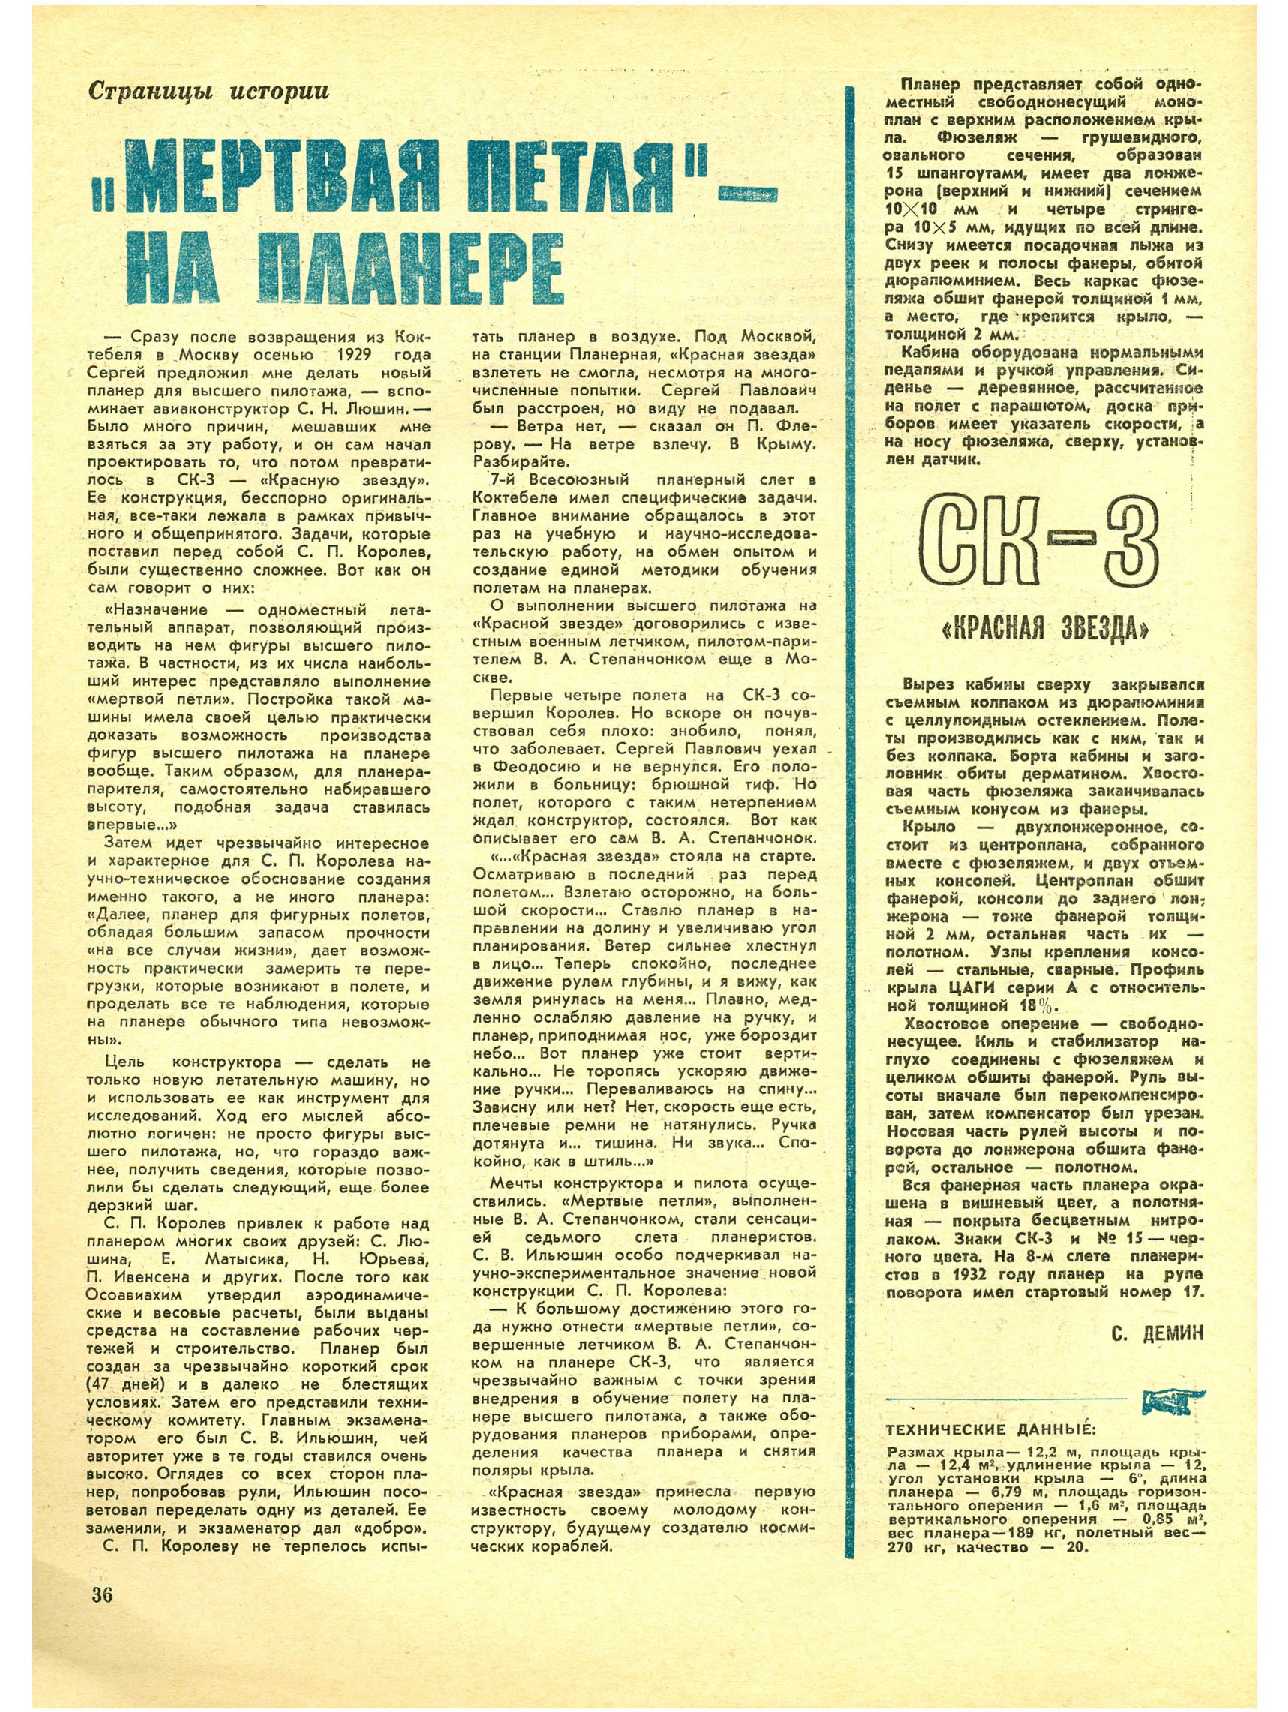 МК 5, 1974, 36 c.